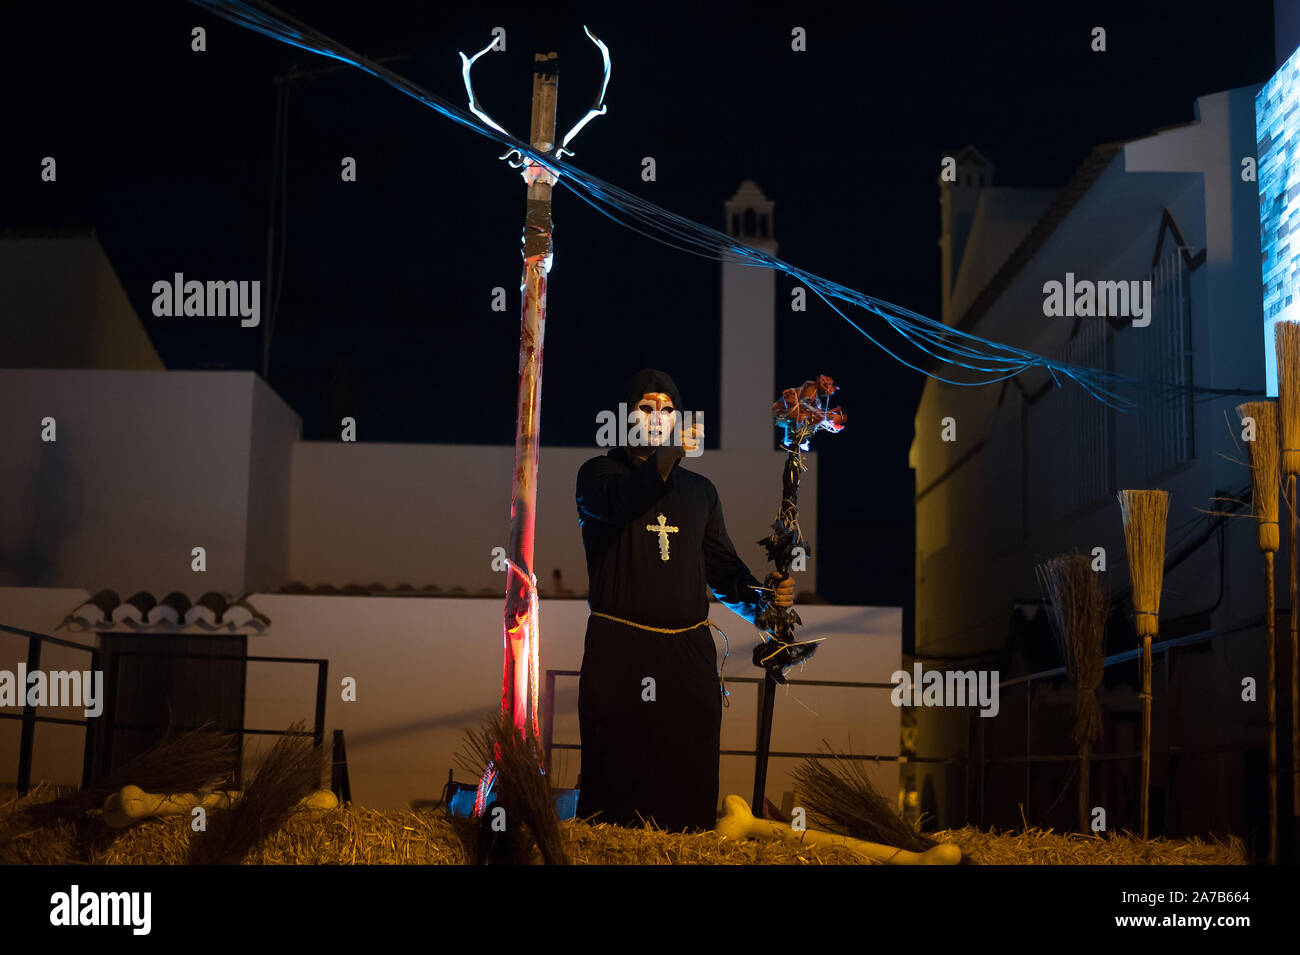 Malaga, Spanien. 31 Okt, 2019. Ein Mann verkleidet als teuflische Mönch während der VI Ausgabe von ''Churriana Noche del Terror'' (churriana Horror Night) die Halloween Nacht in der Nachbarschaft von Churriana zu feiern. Wohnsitz in Churriana beteiligen sich an der Halloween Tag mit schrecklichen Kostüme gekleidet, ihre Häuser zu verzieren und mit unheimlichen Leistungen entlang der Straßen. Die 'Churriana Horror Night' ist eine der beliebtesten Veranstaltungen in der Stadt markiert die Halloween Tag, und bei dieser Gelegenheit das Thema der Ausgabe ist die Hexen. Credit: Jesus Merida/SOPA Images/ZUMA Draht/Alamy leben Nachrichten Stockfoto